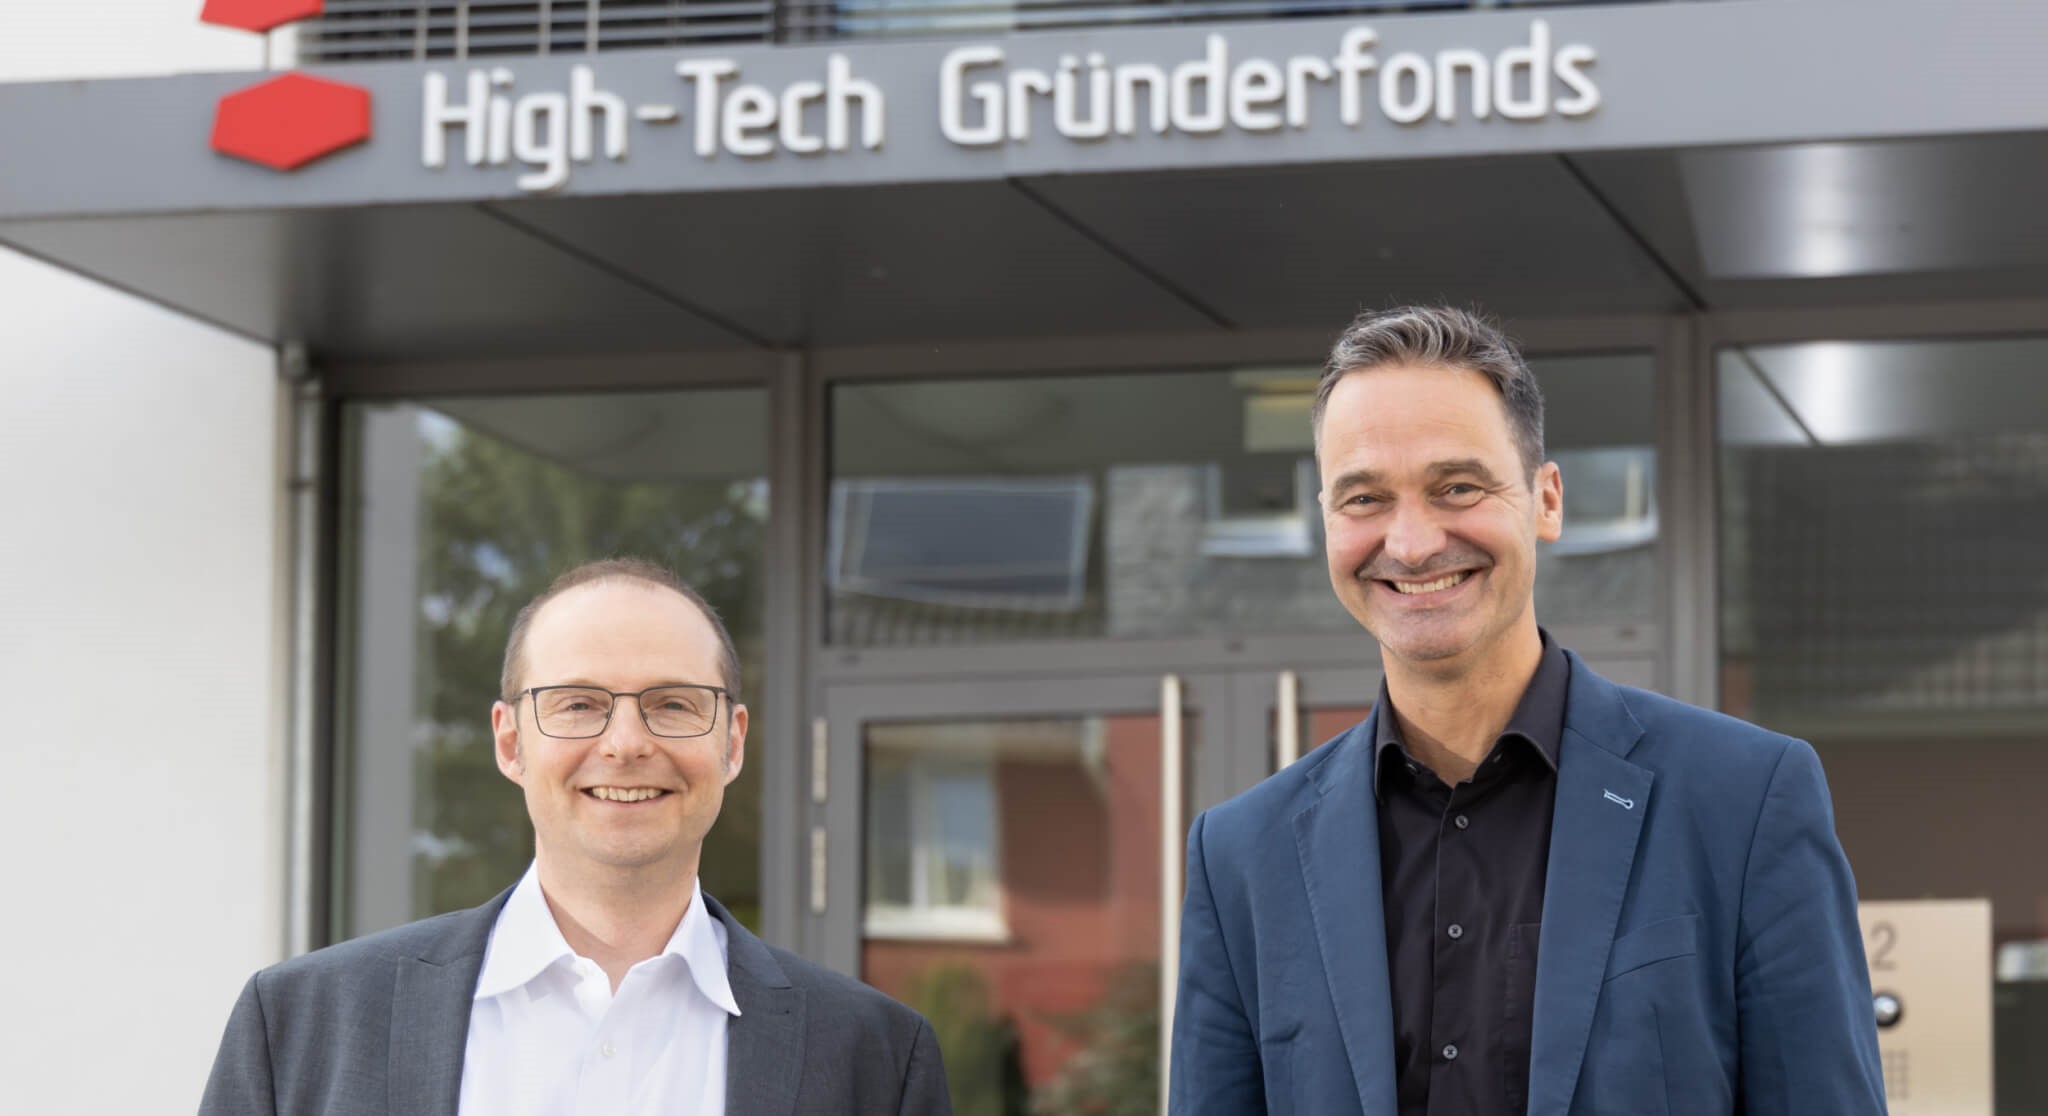 Guido Schlitzer and Alex von Frankenberg in front of High-Tech Gründerfonds headquarters